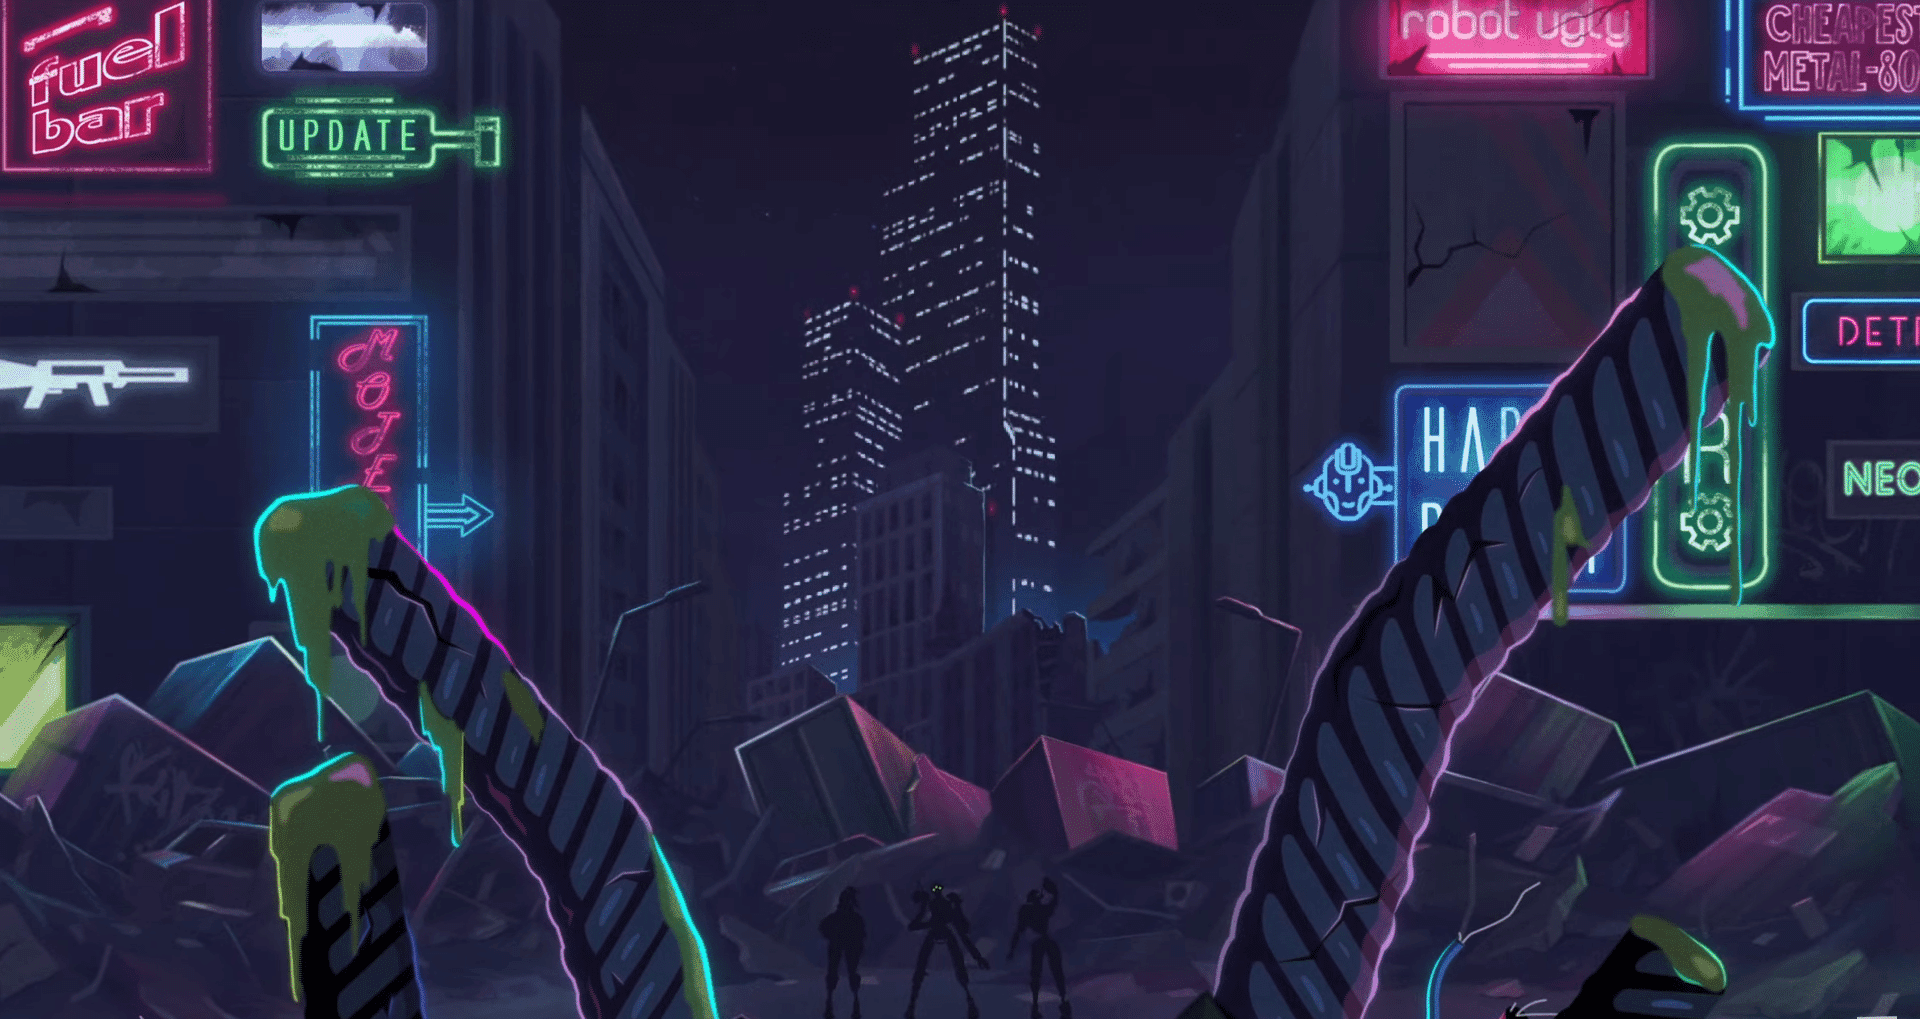 Drunk Robots, un juego de rol NFT de BNB Chain, sumerge a los jugadores en la ciudad post-apocalíptica de Los Machines en una acción emocionante.